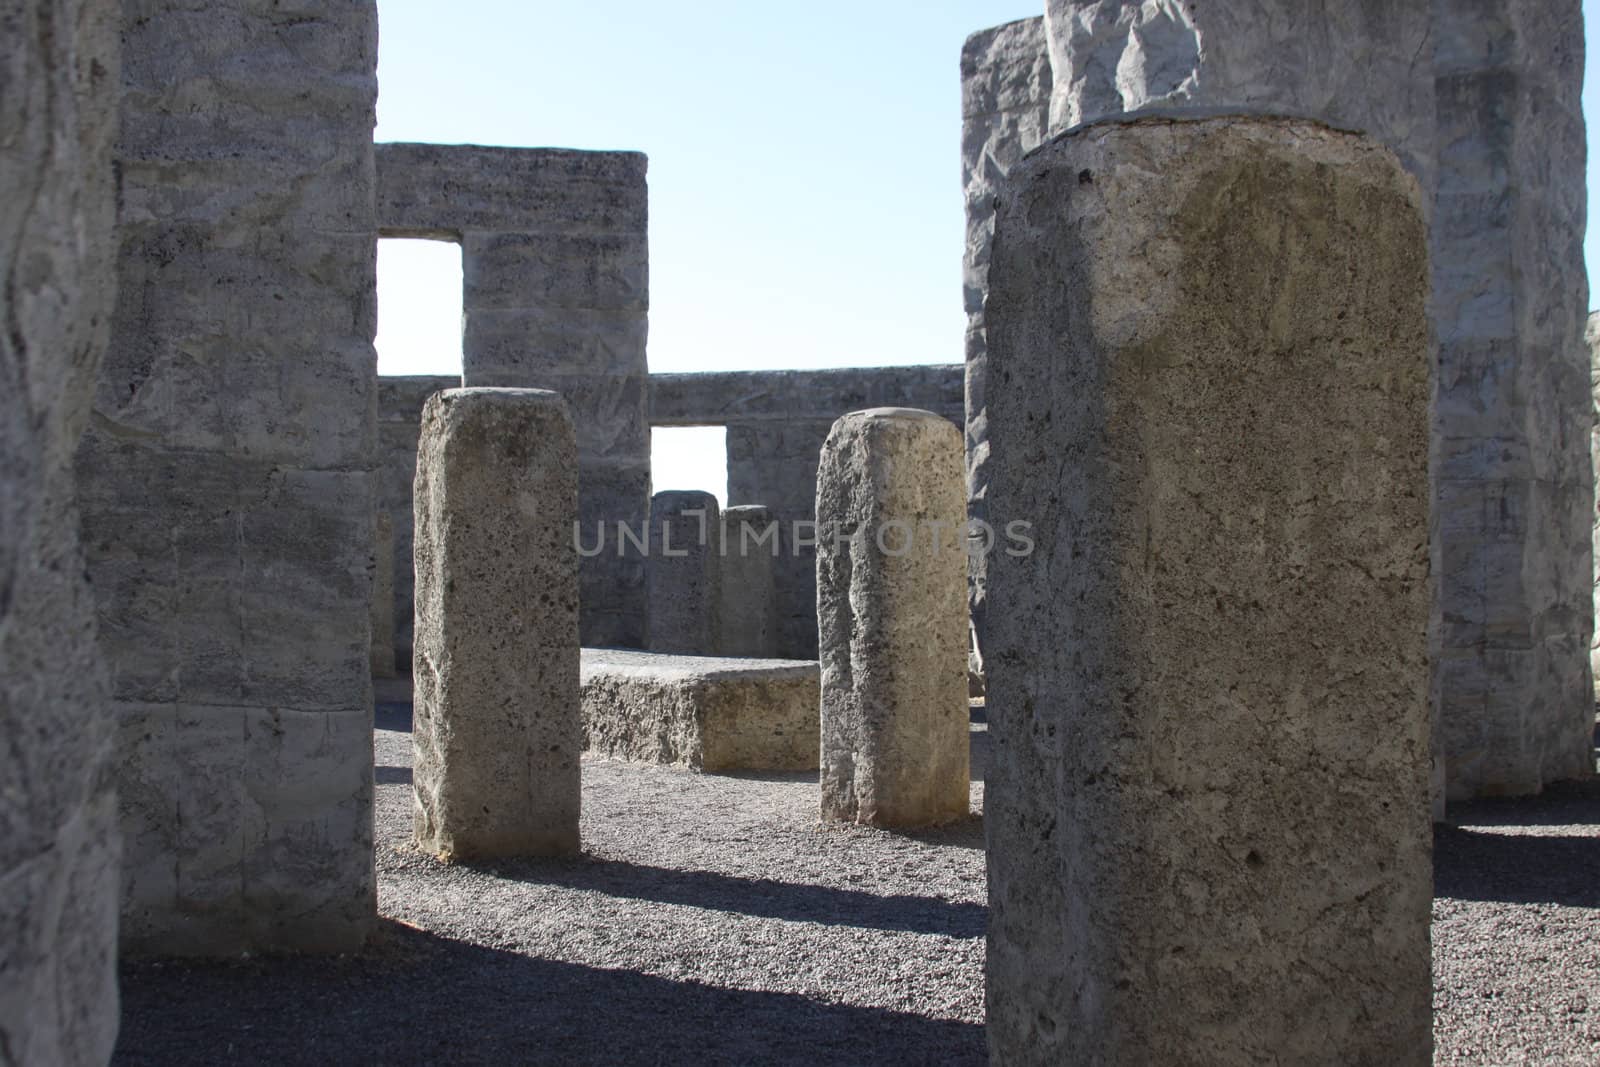 Stonehenge replica in the Dalles area of Washingtone state.